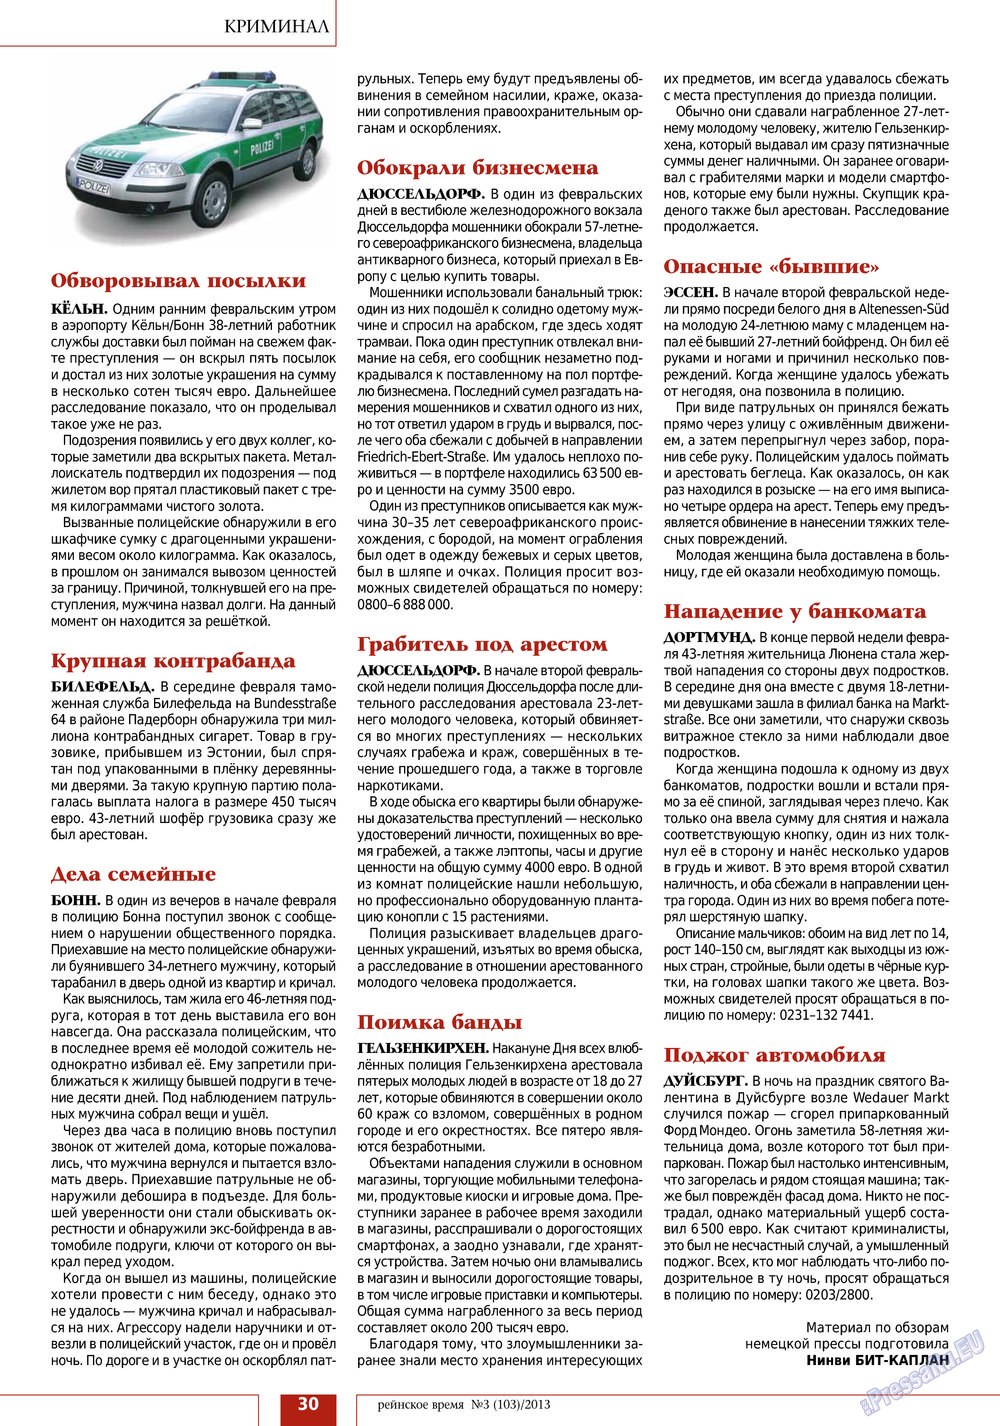 Rejnskoe vremja (Zeitschrift). 2013 Jahr, Ausgabe 3, Seite 30